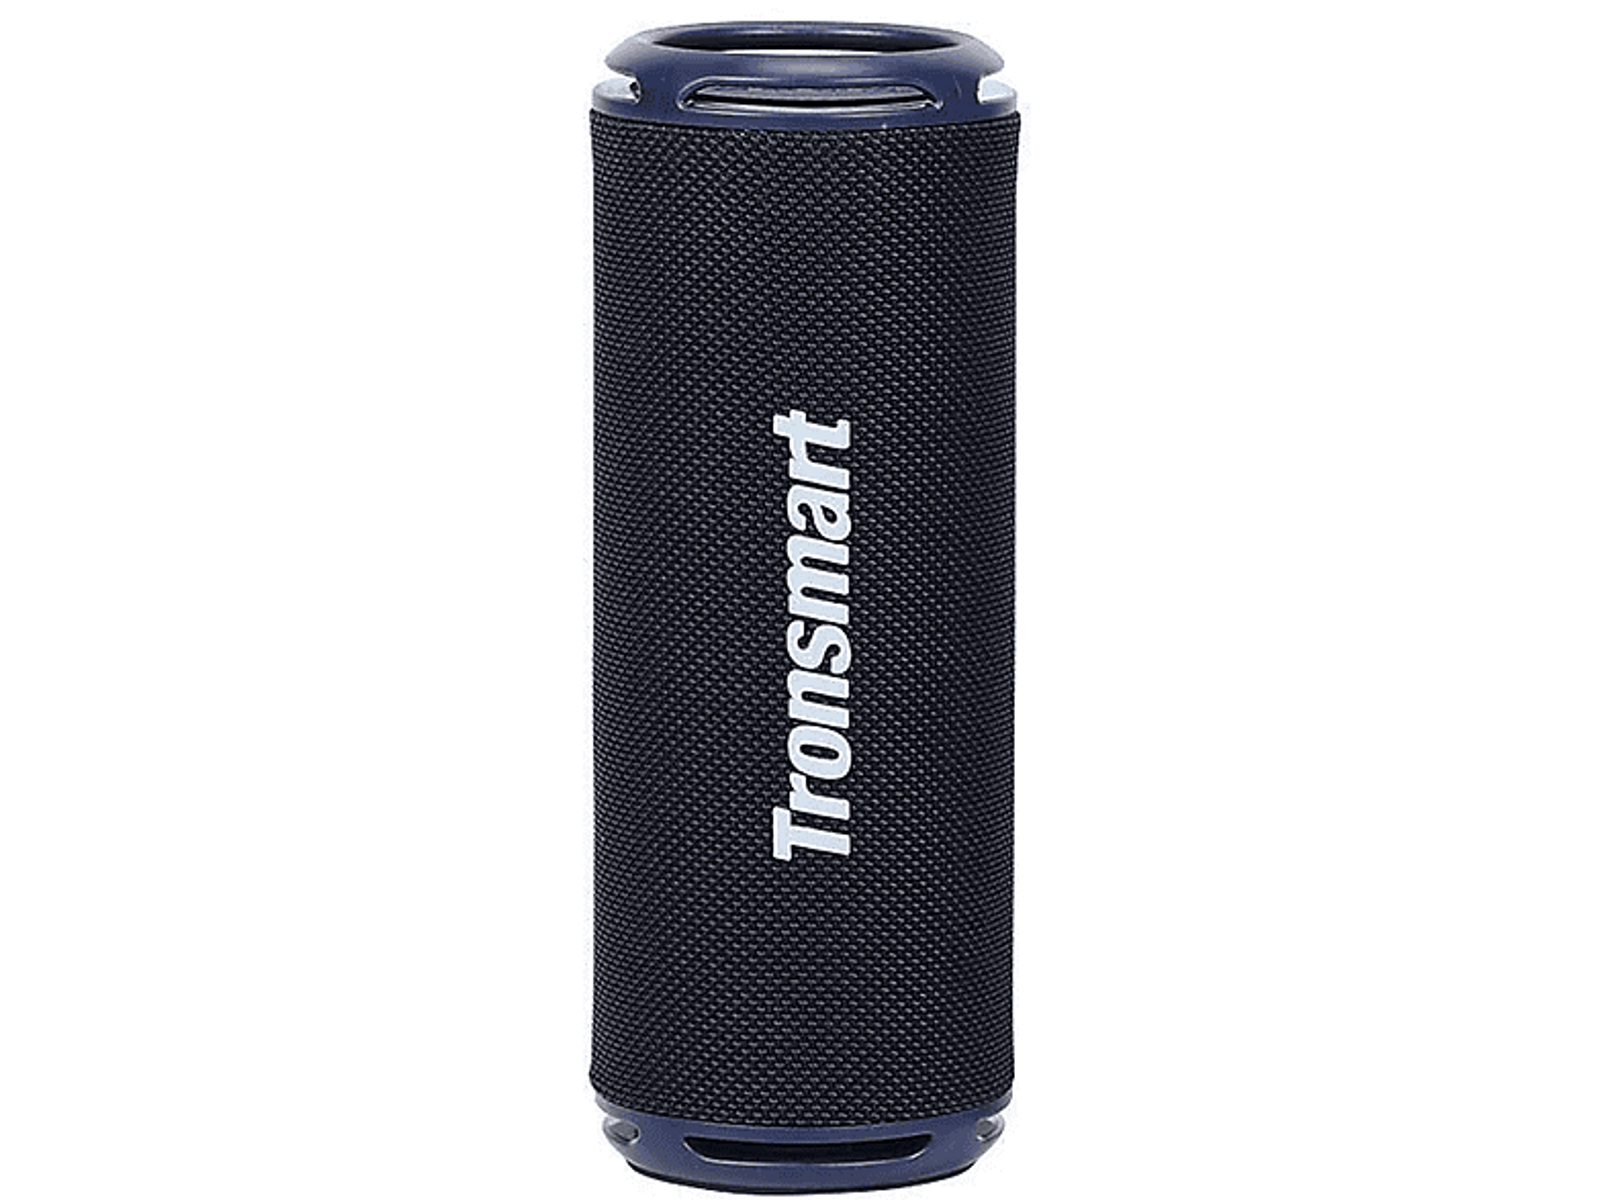 Blau 36480323 Bluetooth TRONSMART Lautsprecher,